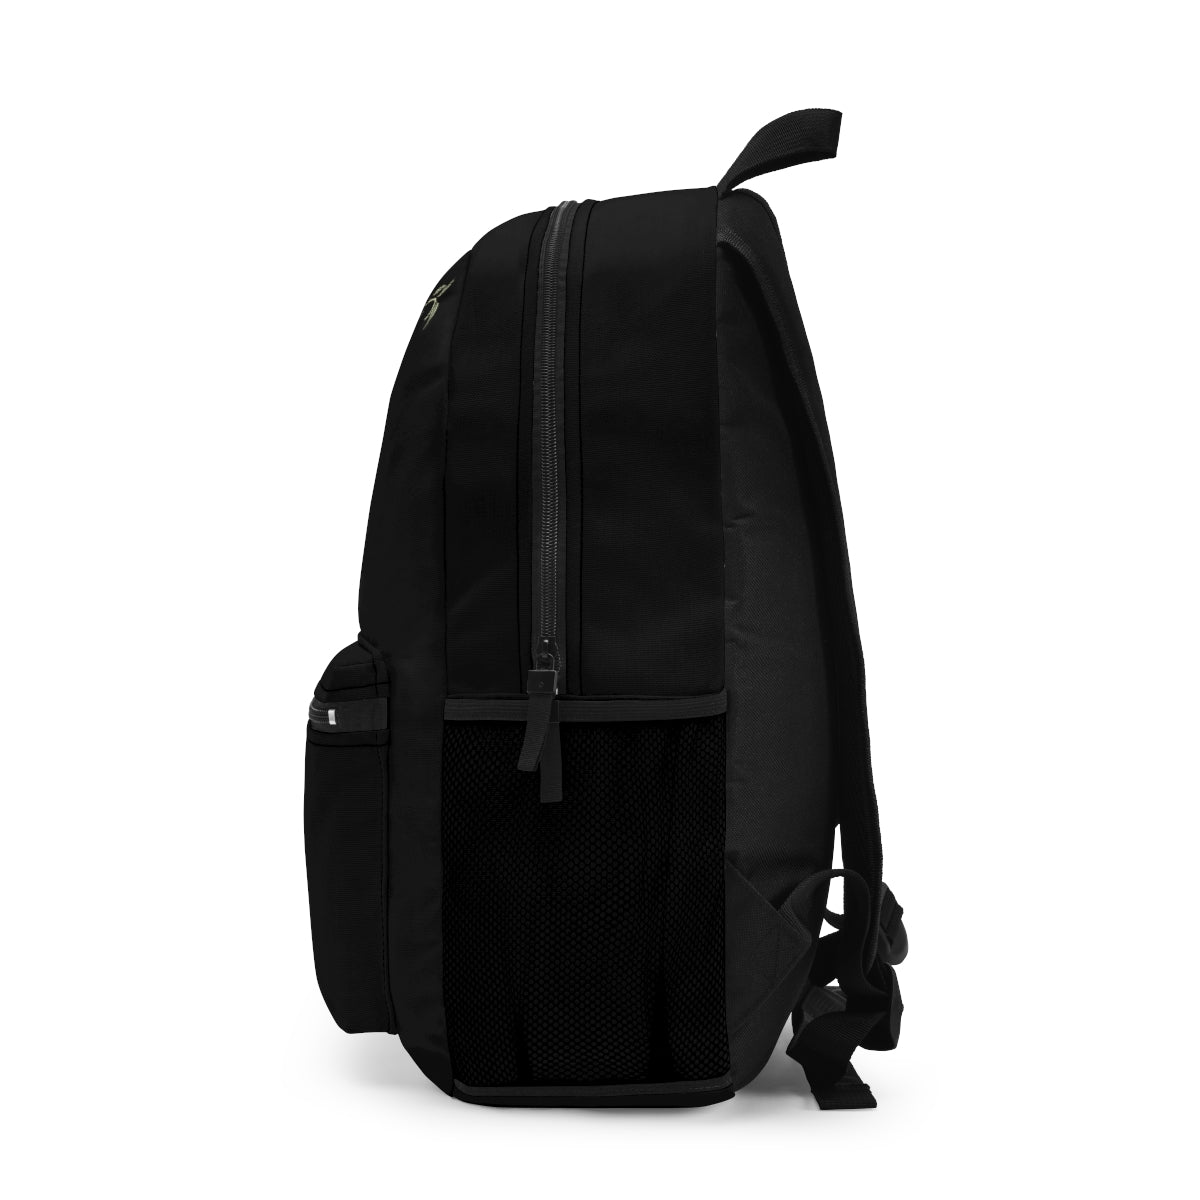 Sunflower Backpack / Girls School Bookbag